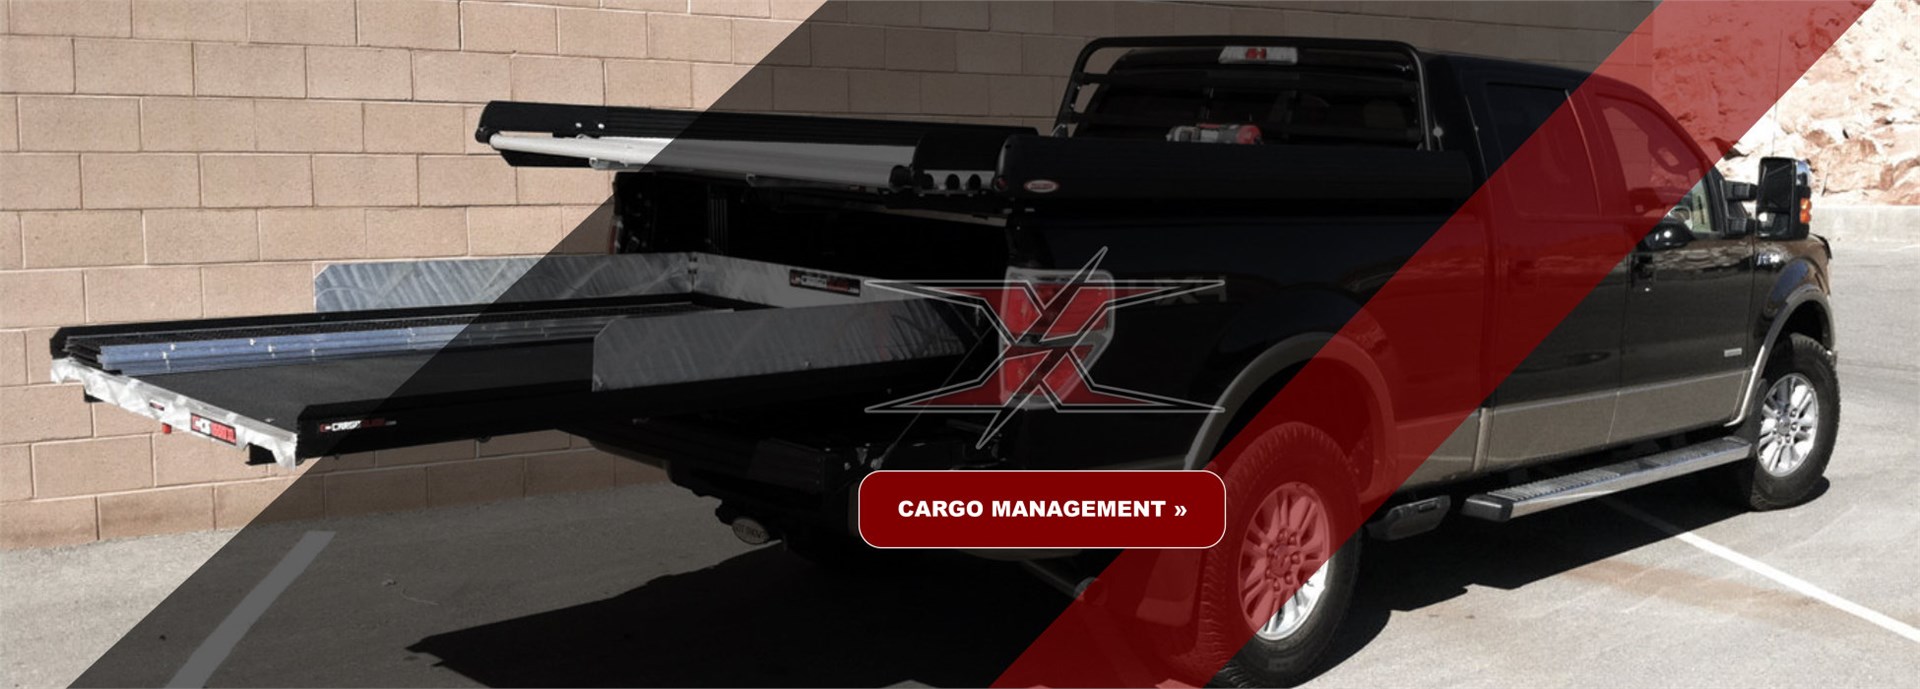 Cargo Management